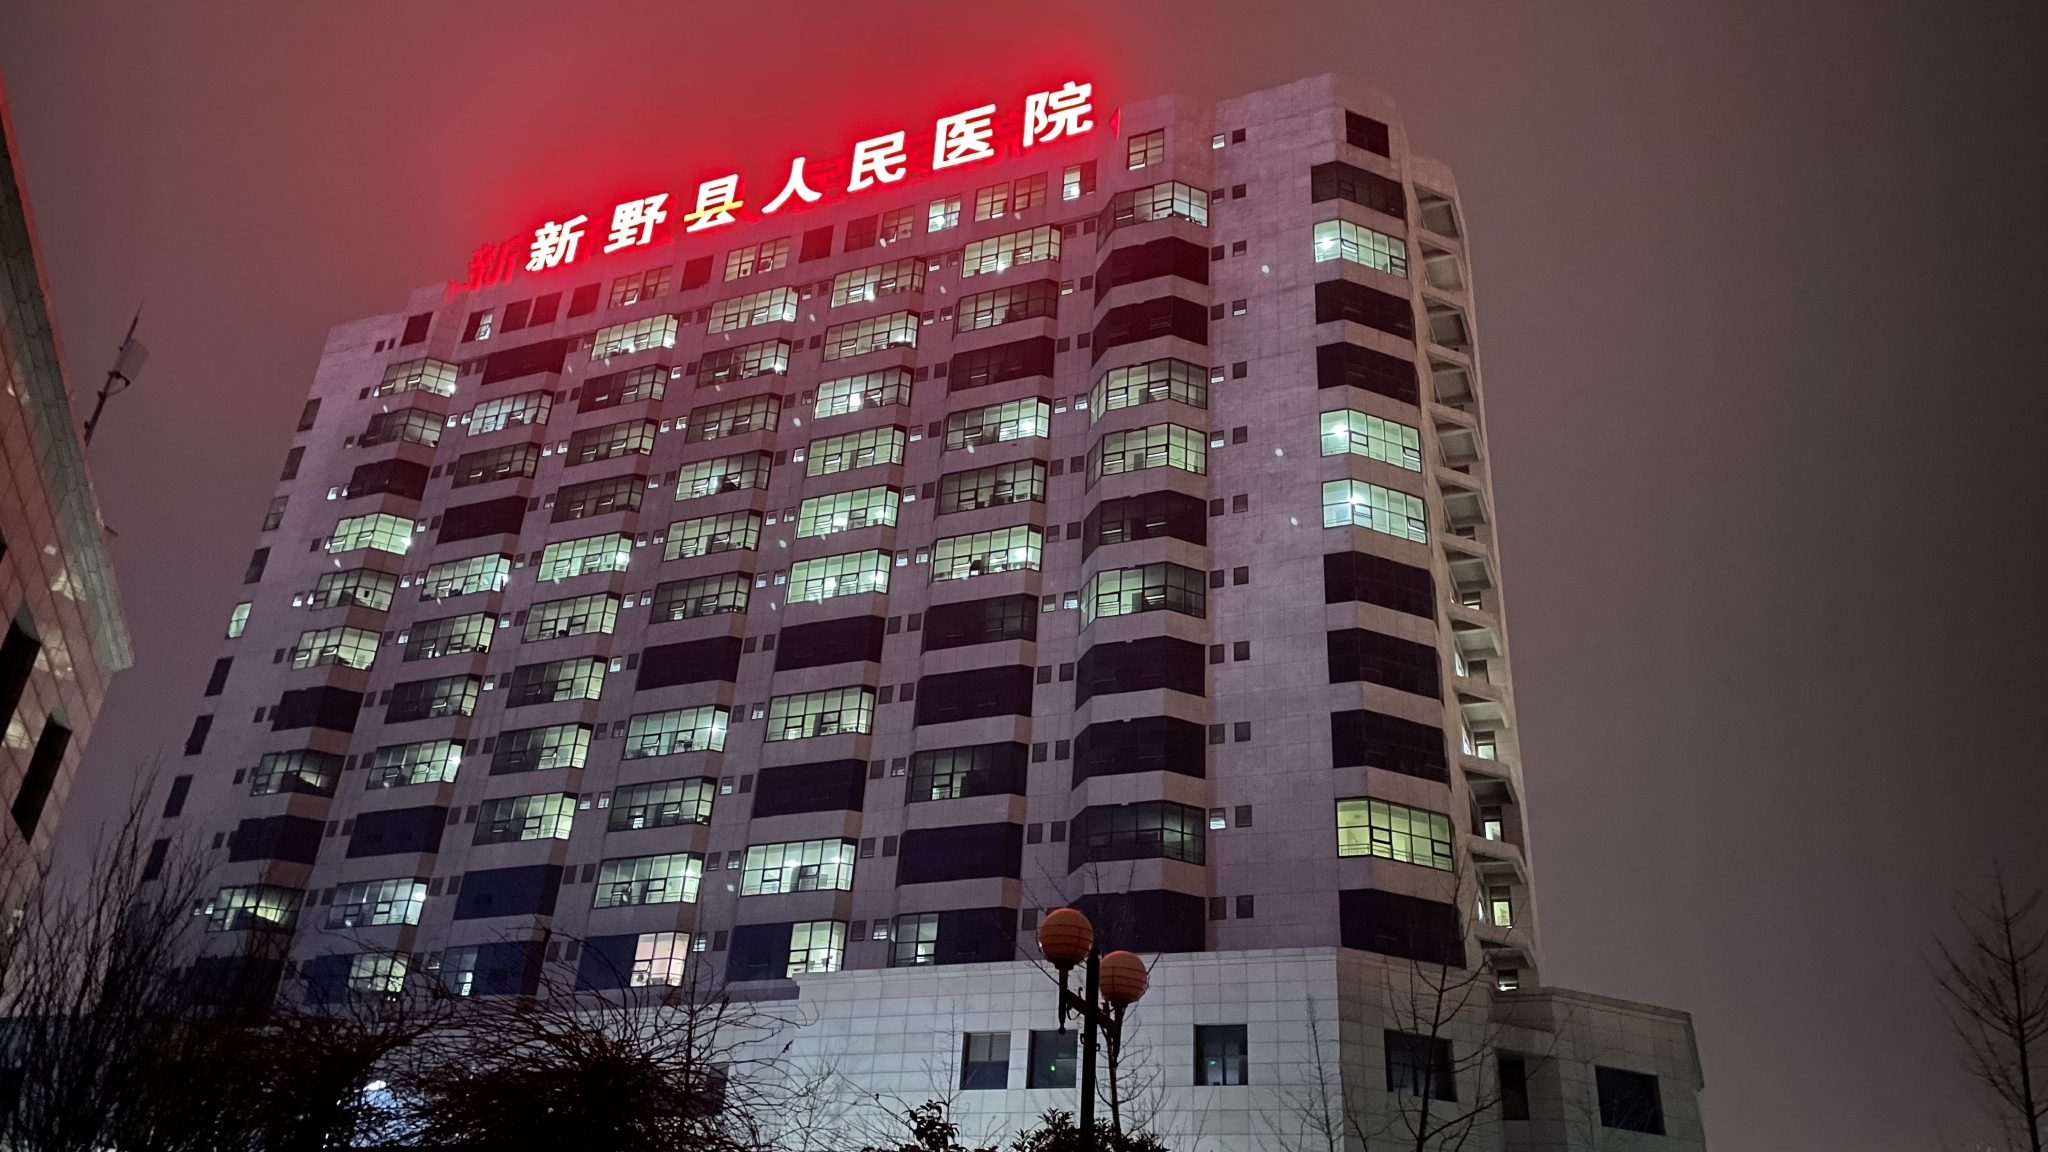 除夕夜里的新野县人民医院住院楼。